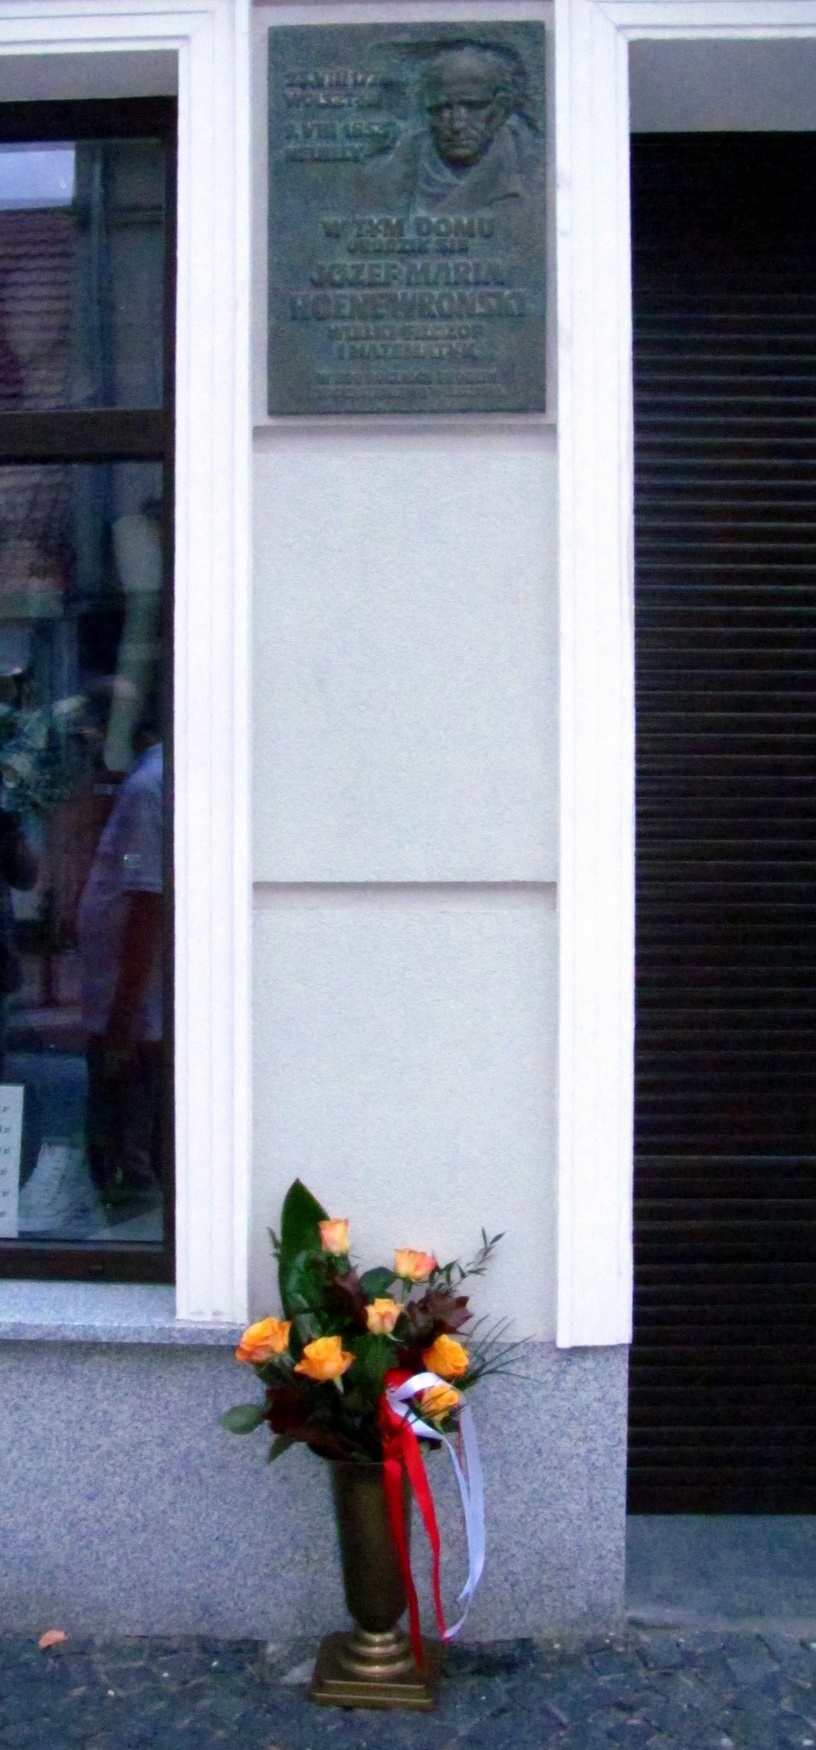 Kwiaty pod tablicą pamiątkową na domu w Wolsztynie, w którym 240 lat temu urodził się Józef Hoene.